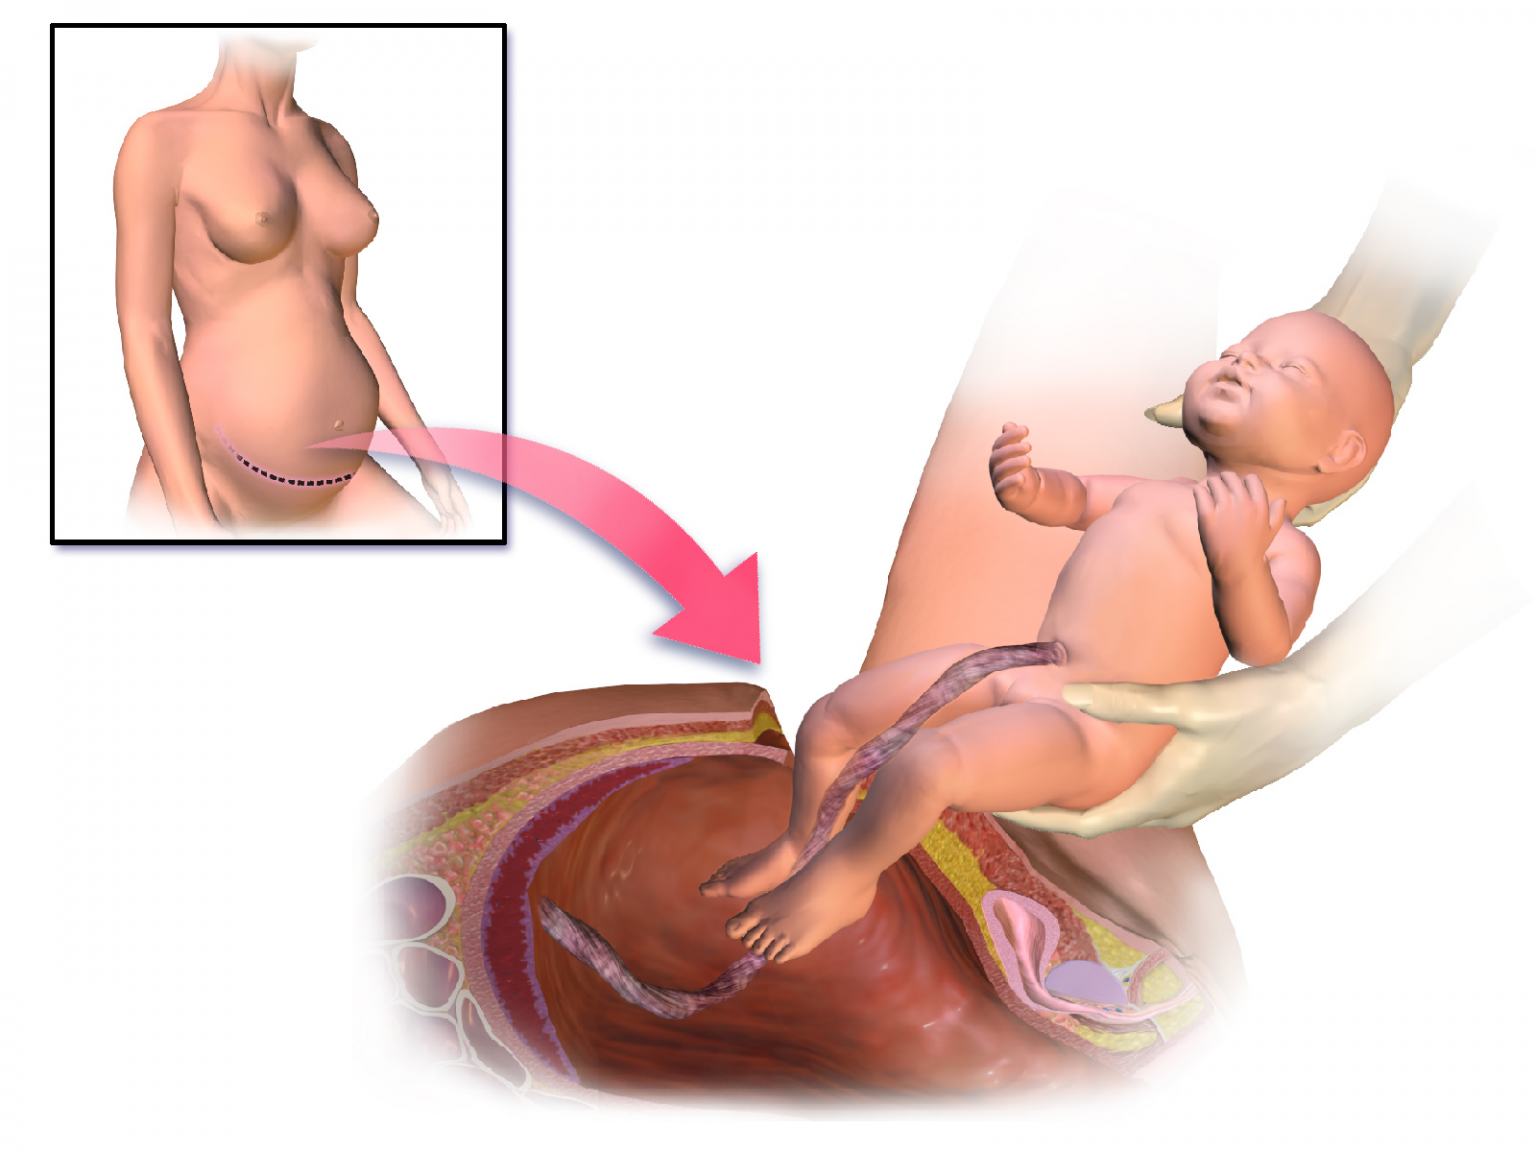 Рождение ребенка кесарево сечение. Родоразрешение кесарево сечение. Разрез после кесарева сечения.